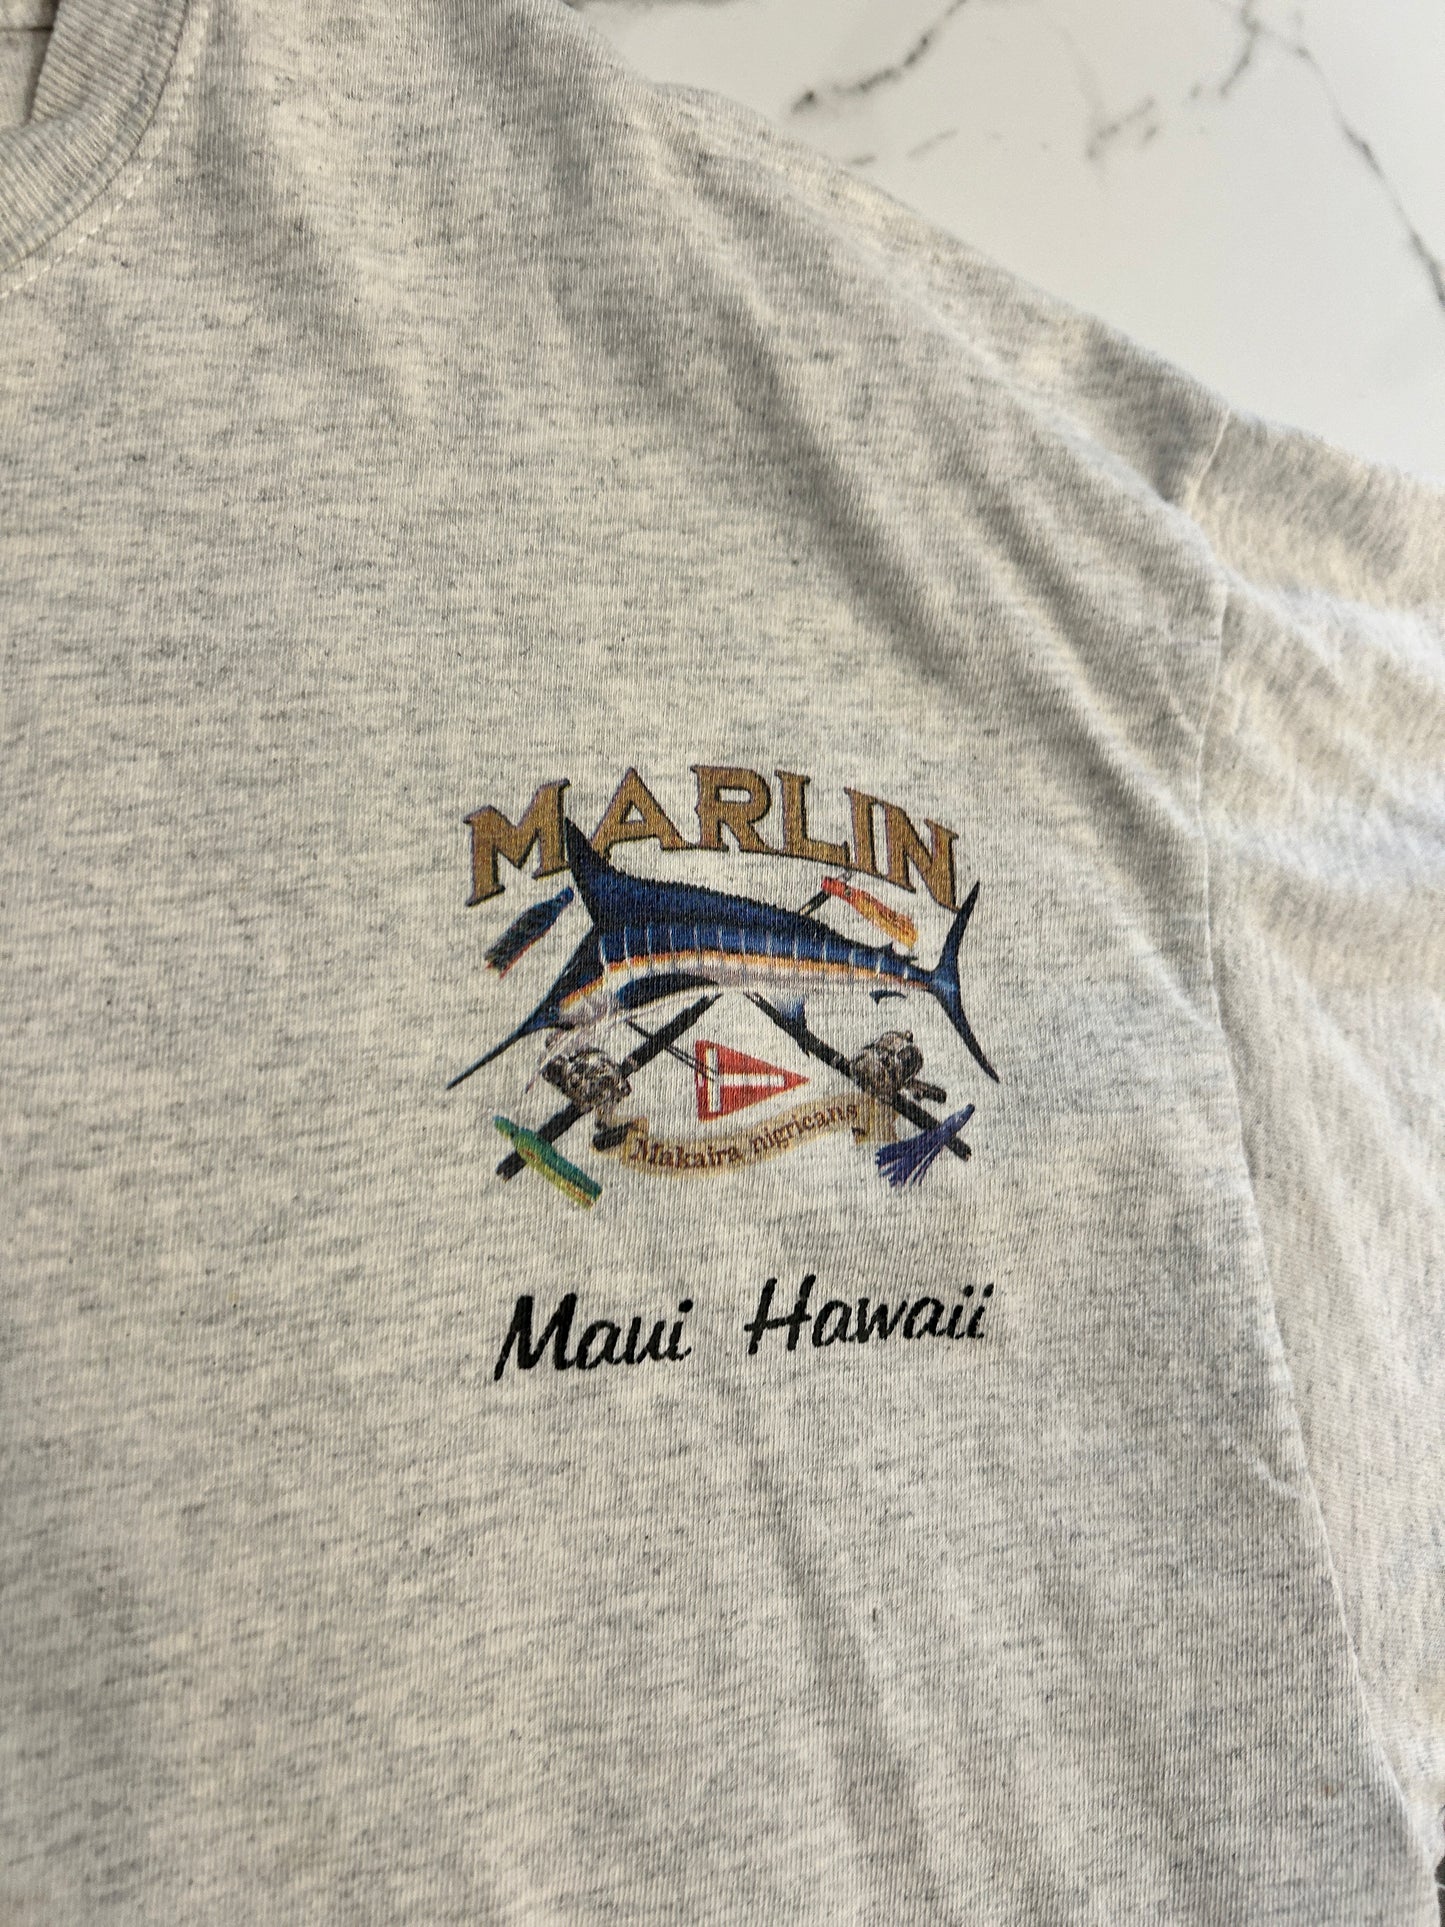 Vintage Marlin Maui Tee (XL)